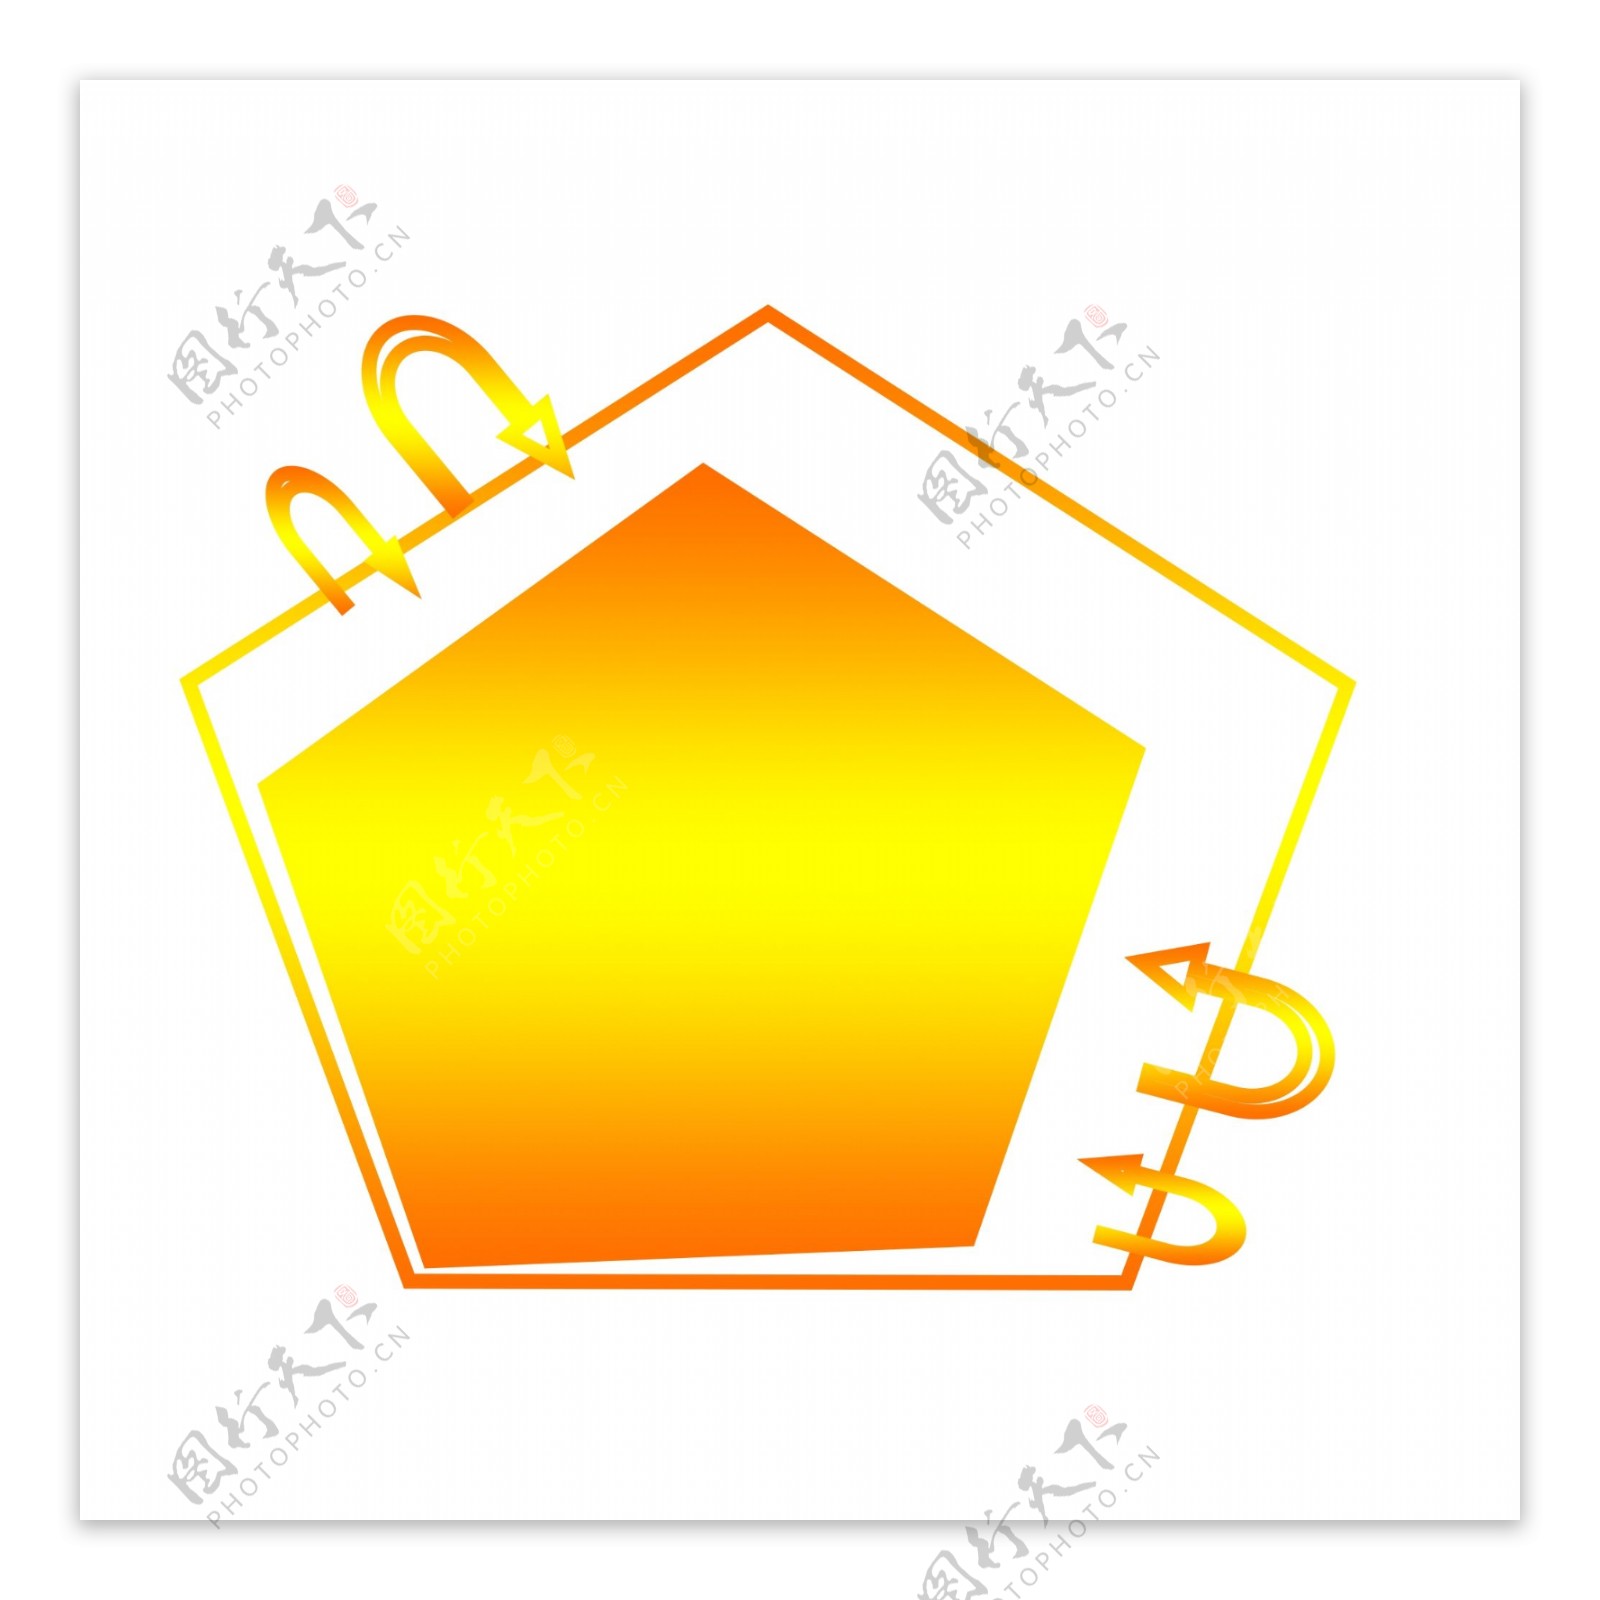 纹理渐变橙黄色五边形卡通装饰边框可商用